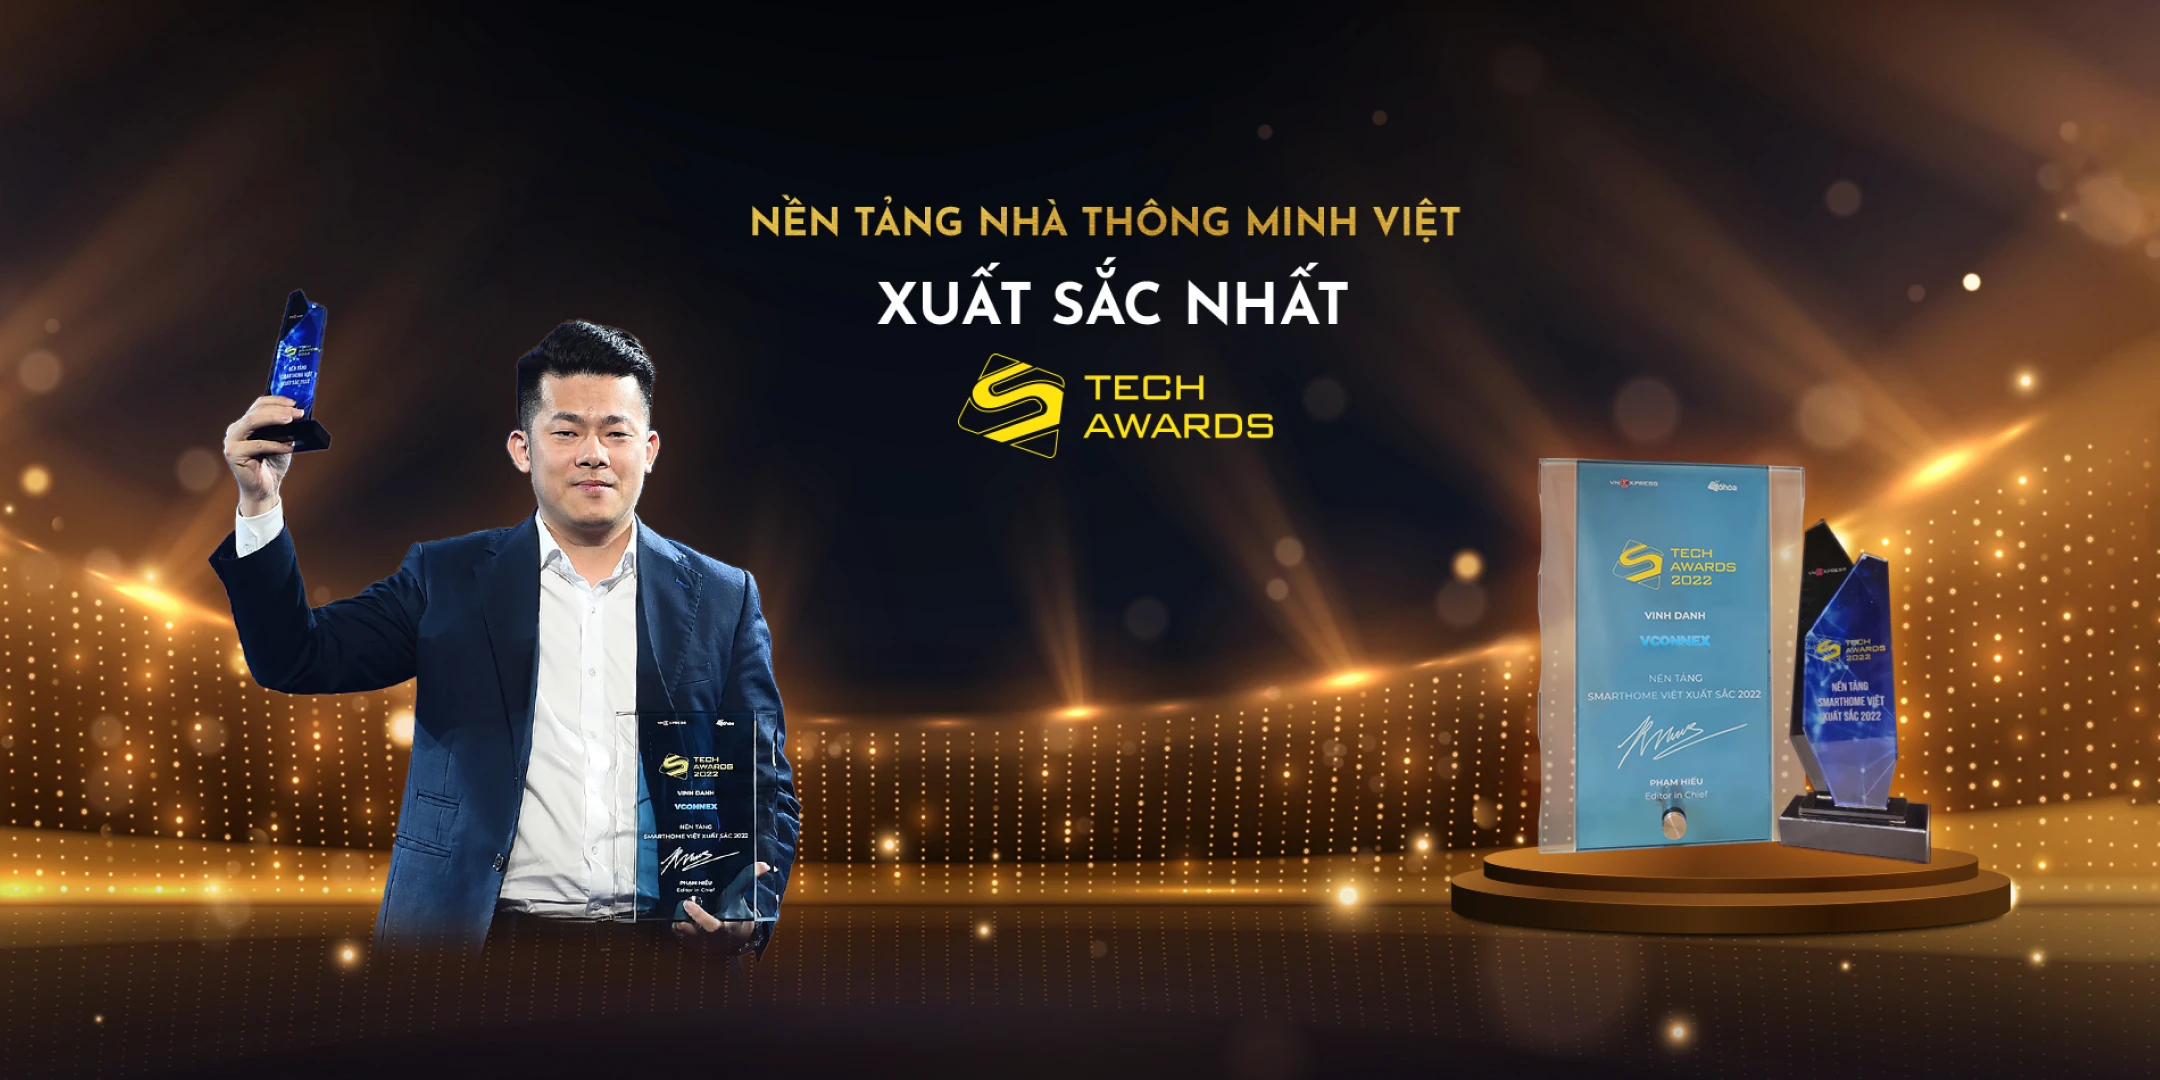 nen-tang-nha-thong-minh-xuat-sac-nhat-Tech-Awards